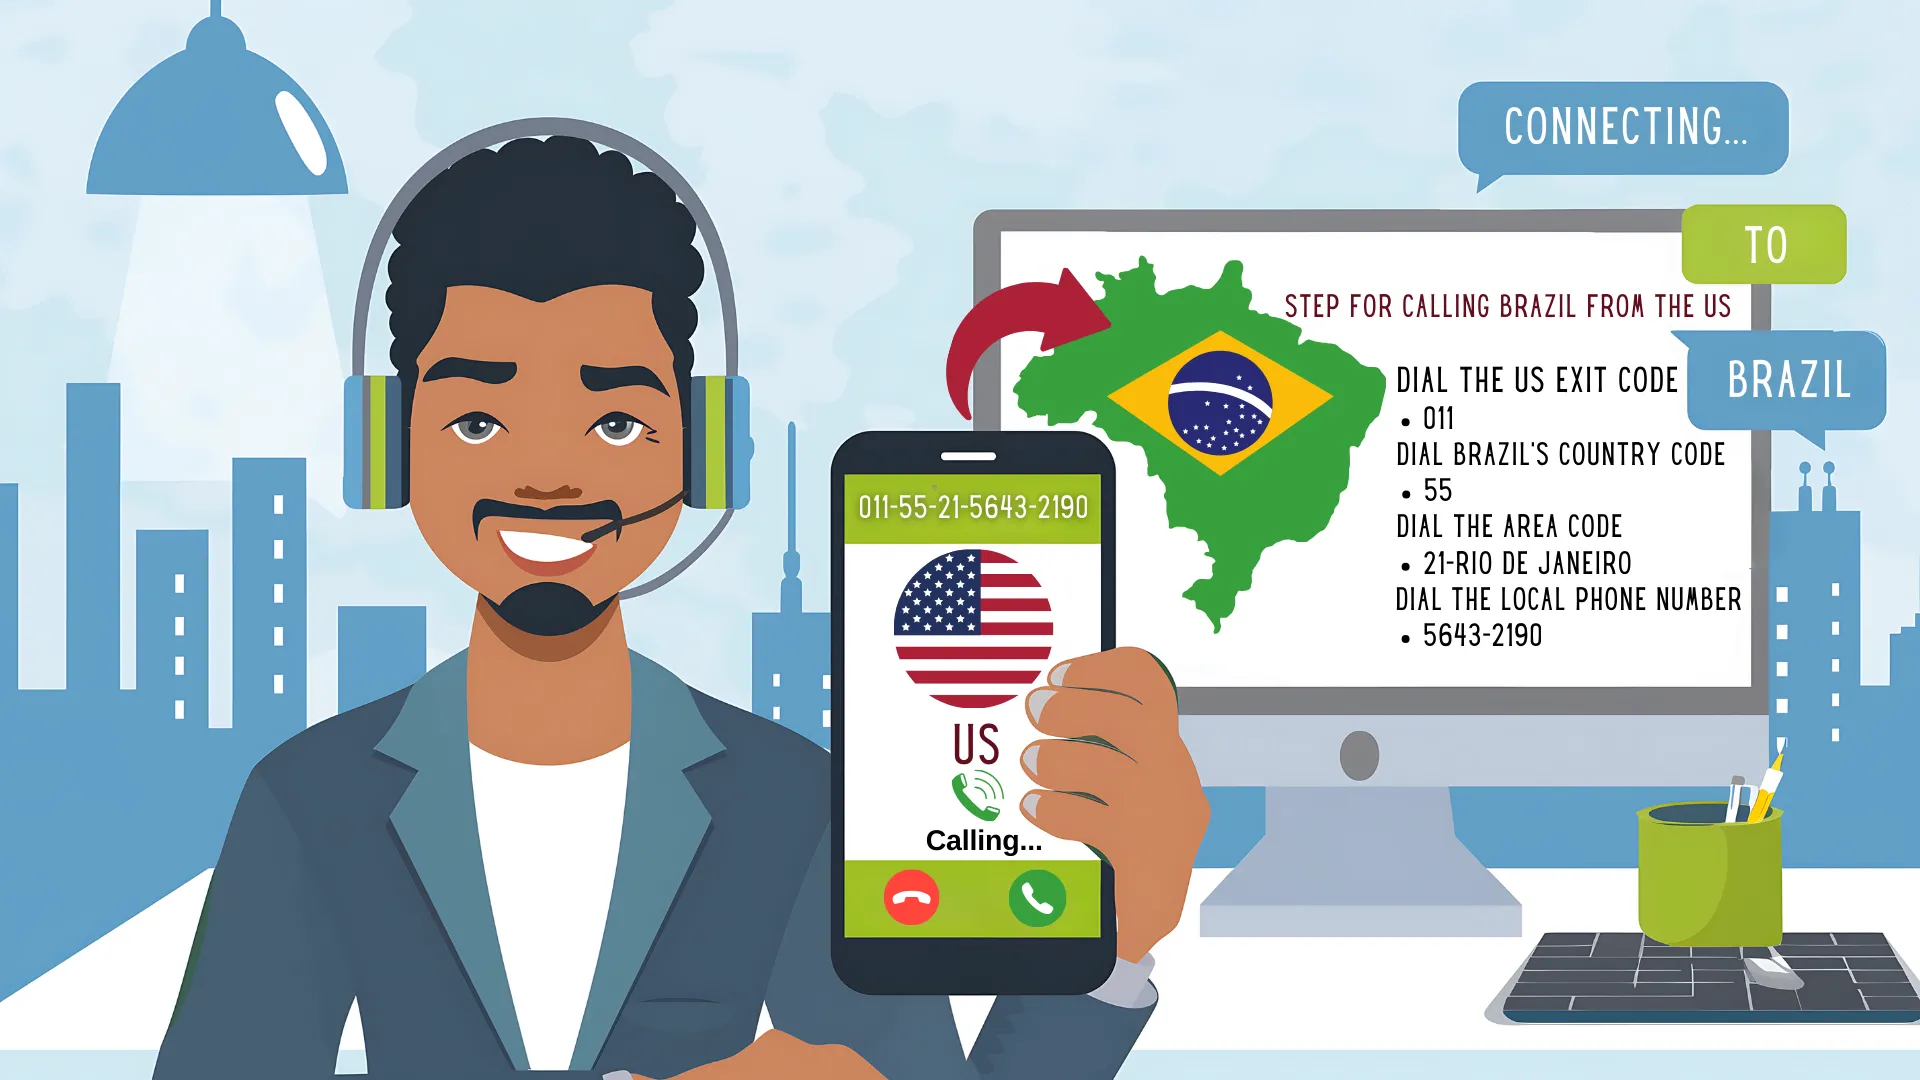 브라질에 전화 걸기: 단계별 가이드